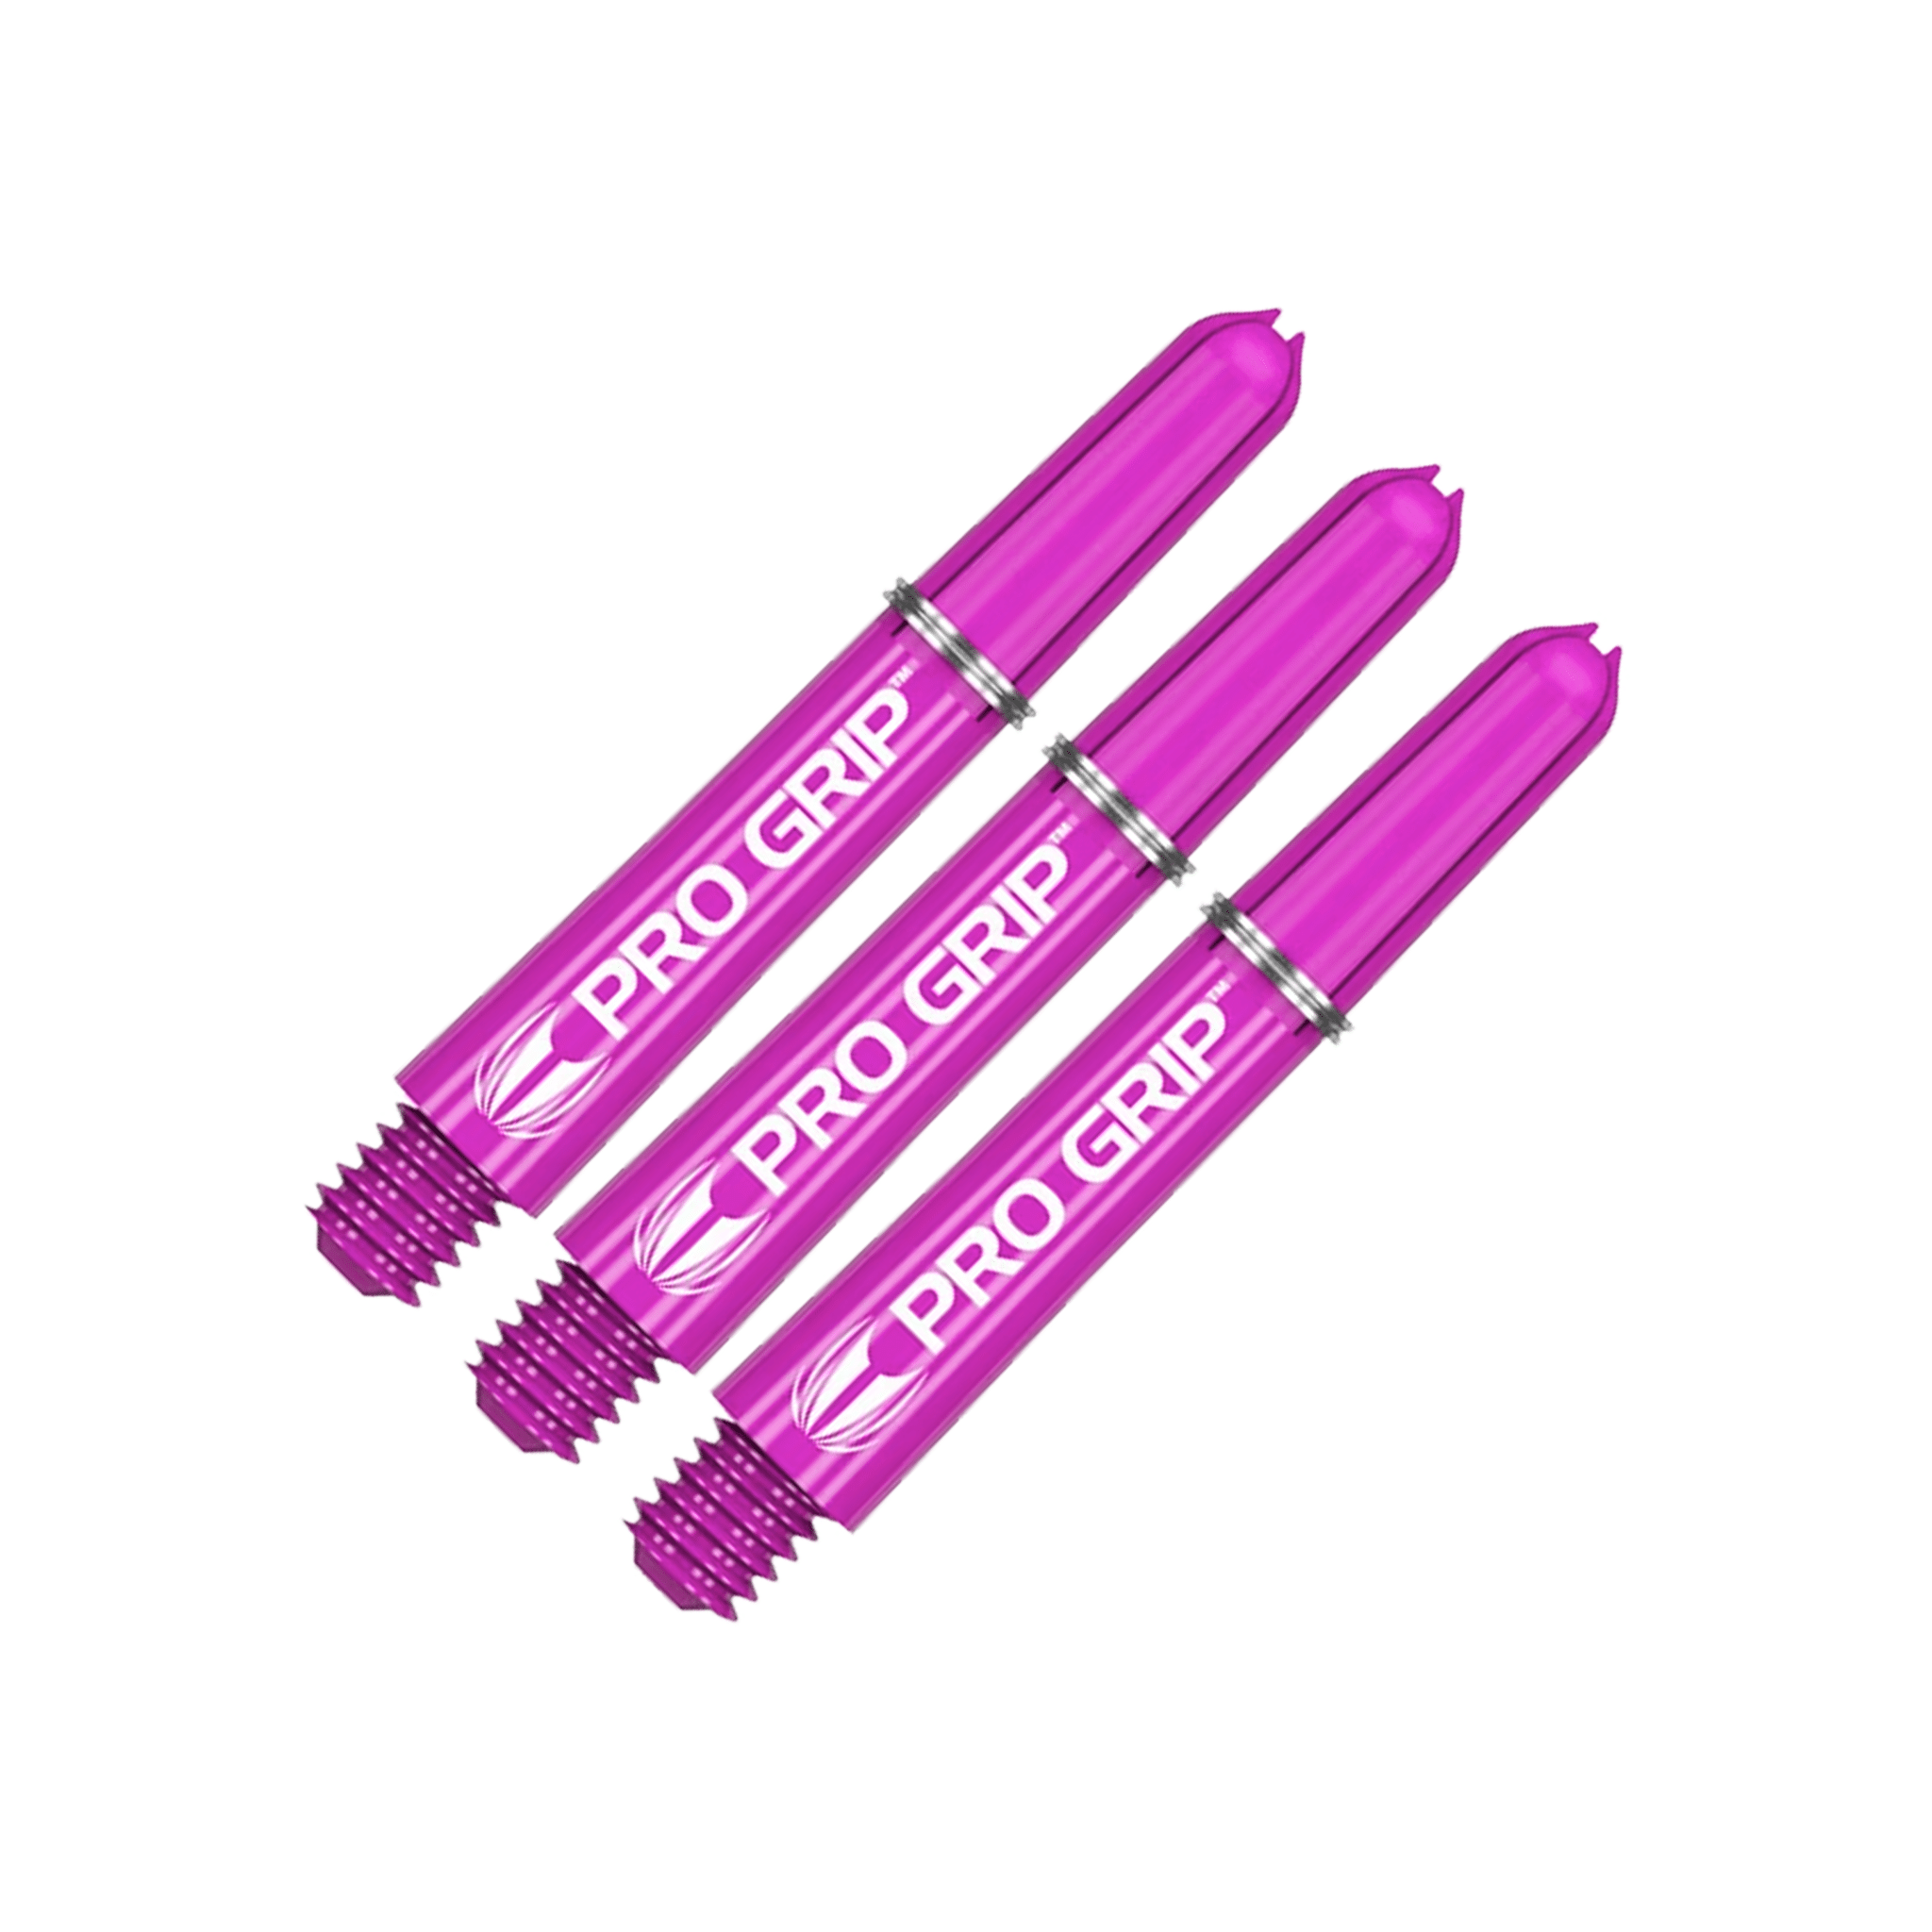 Target Pro Grip Multi Pack - Nylon Dart Shafts (3 Sets) Purple / Short (34mm) Shafts